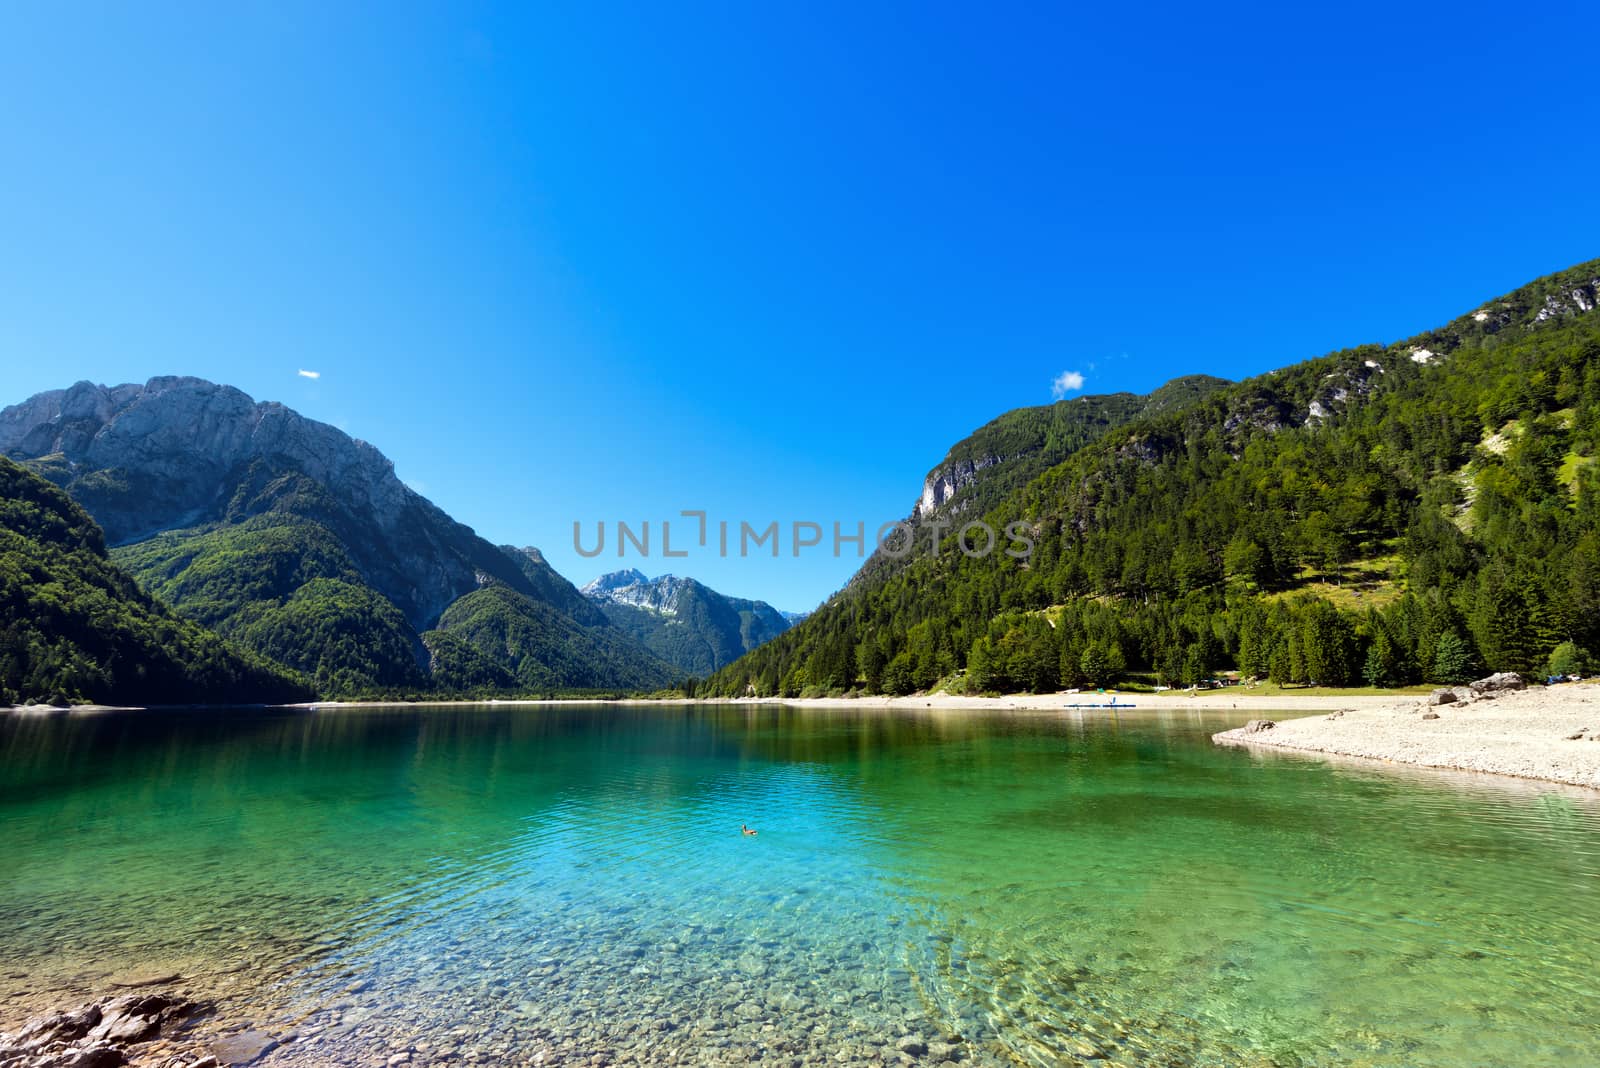 Lago del Predil (Predil Lake), beautiful alpine lake in north Italy near the Slovenian border. Julian Alps, Friuli Venezia Giulia, Italy